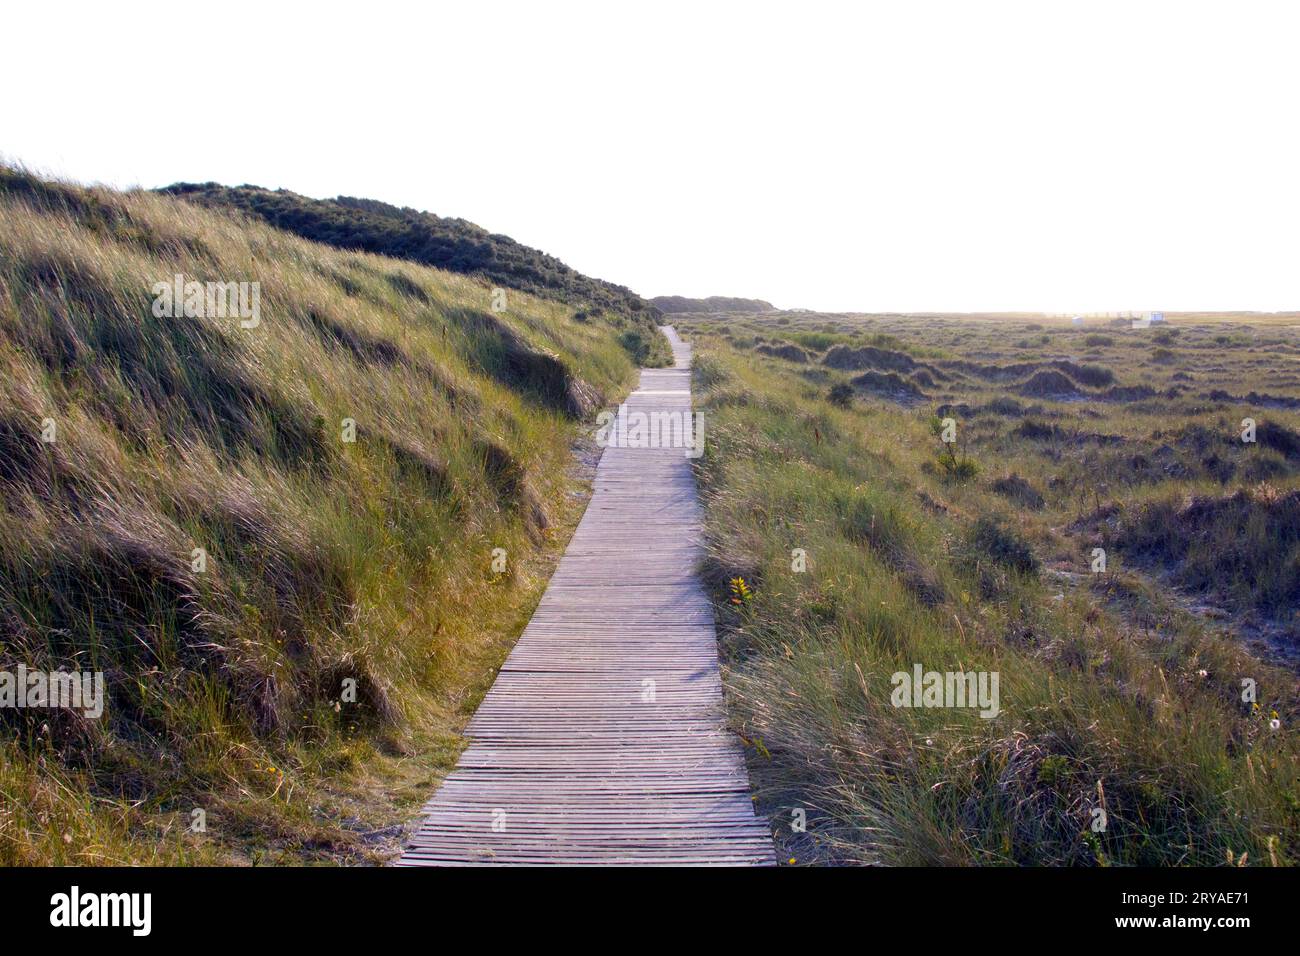 Bohlenweg durch die Dünen auf Borkum x boardwalk in the dunes of Borkum Islanfd Stock Photo